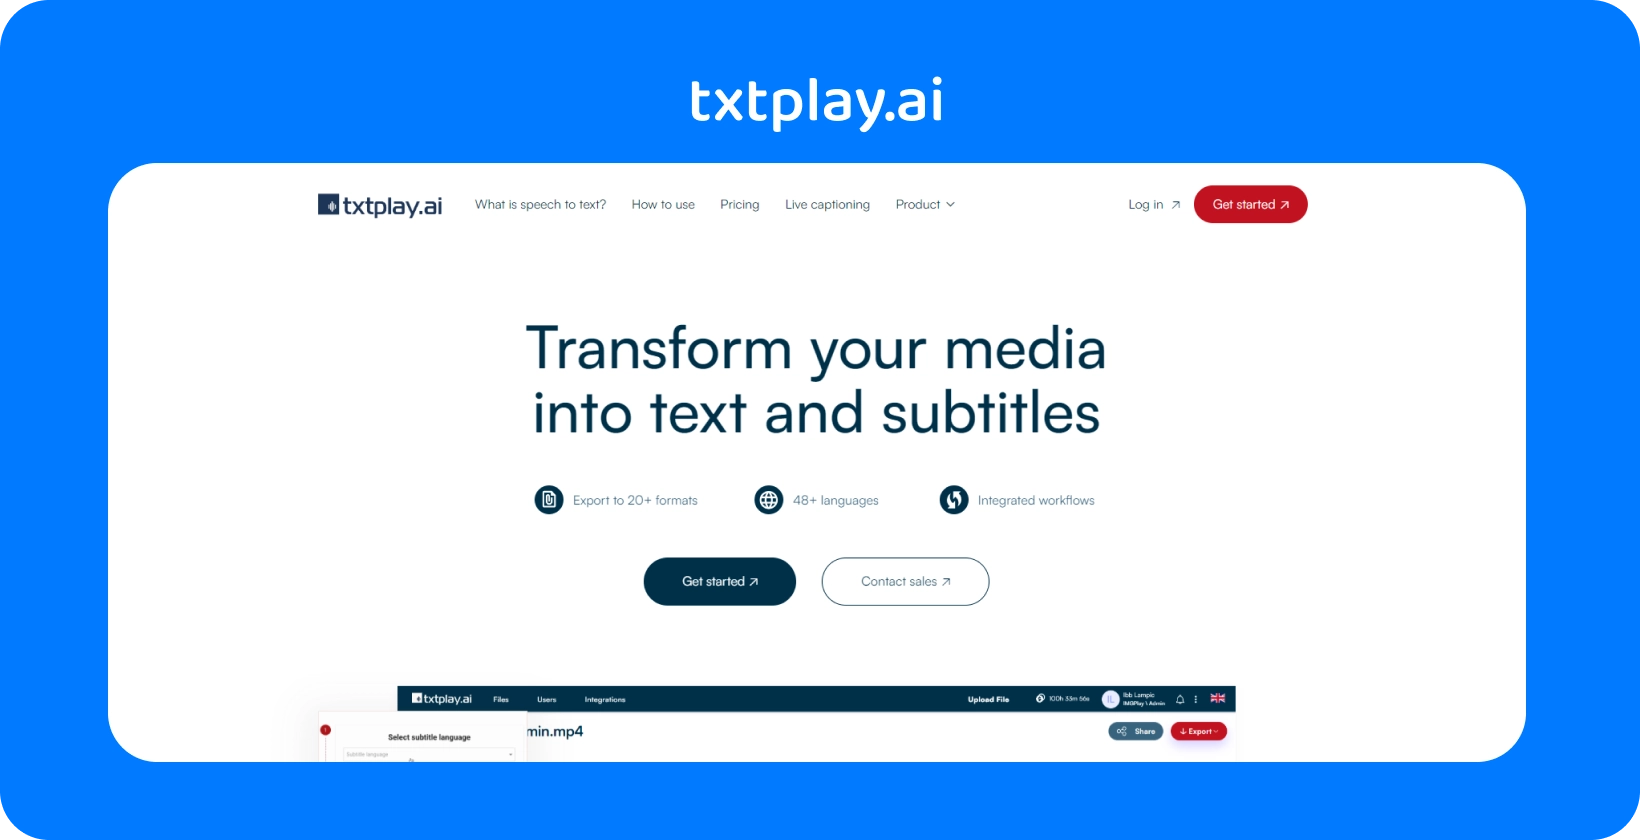 Pārveidojiet multividi tekstā un subtitros ar txtplay.ai, atbalstot 48+ valodas un 20+ formātus.